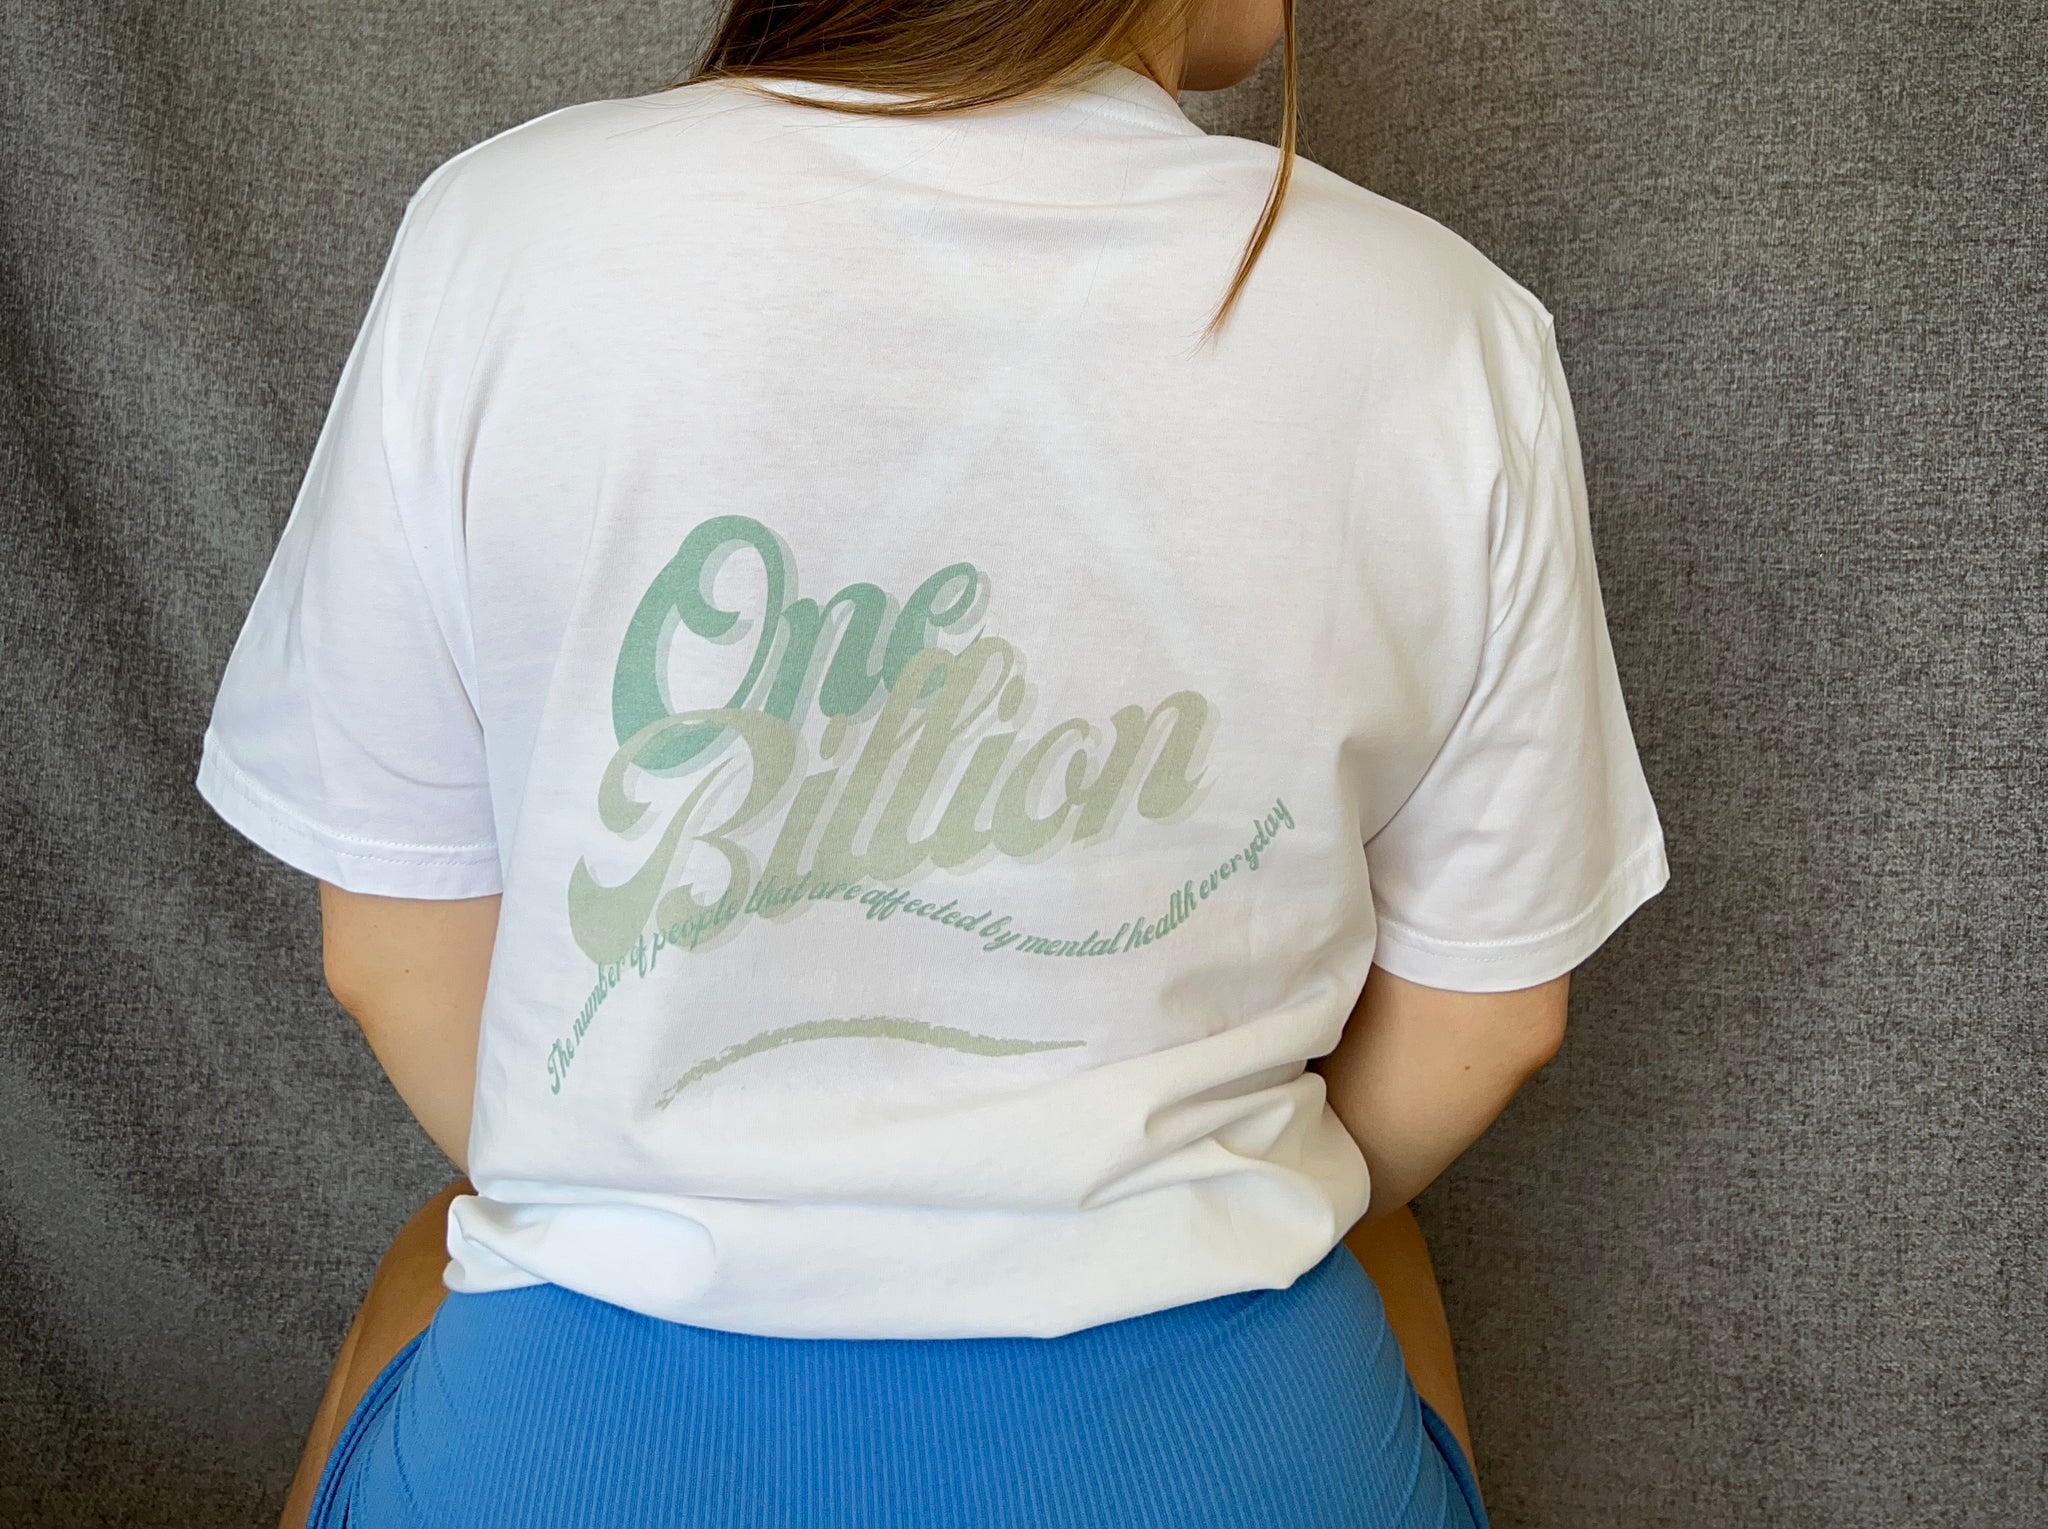 ‘One Billion’ White T-Shirt